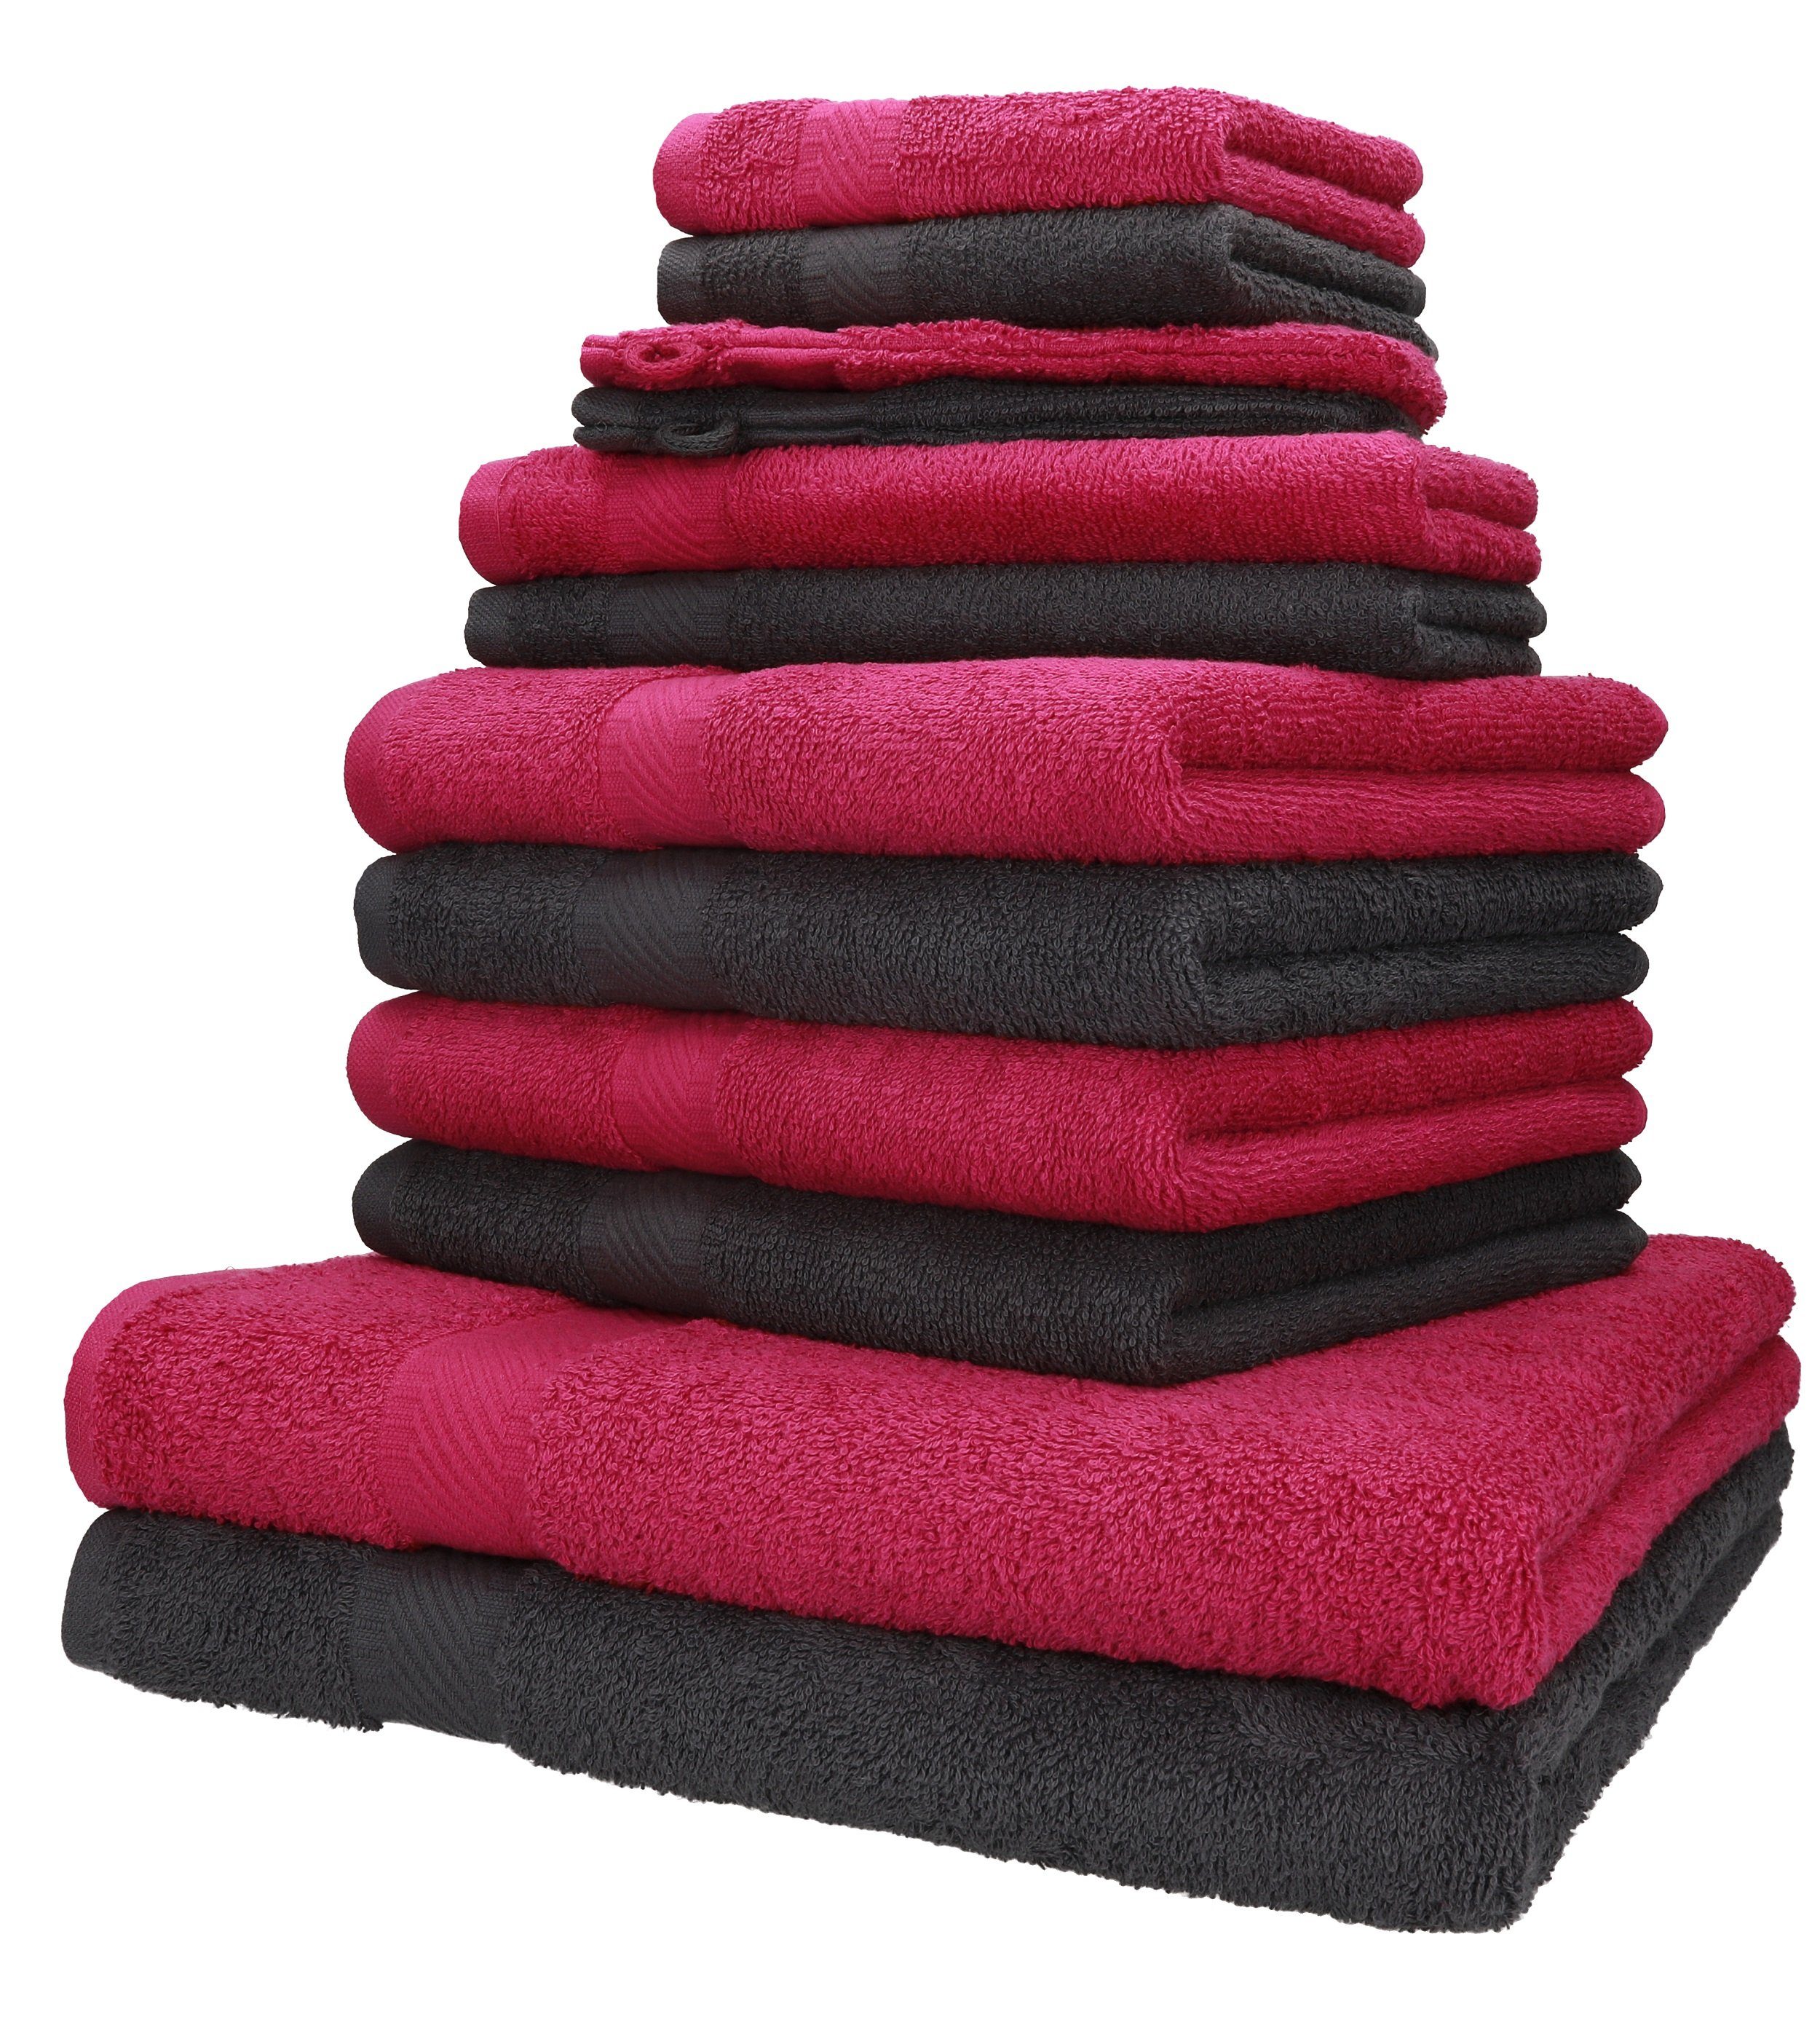 Betz Handtuch Set 12-tlg. Handtuch-Set PALERMO 100% Baumwolle 2 Liegetücher 4 Handtücher 2 Gästetücher 2 Seiftücher 2 Waschhandschuhe Farbe cranberry und anthrazit, 100% Baumwolle, (12-tlg)